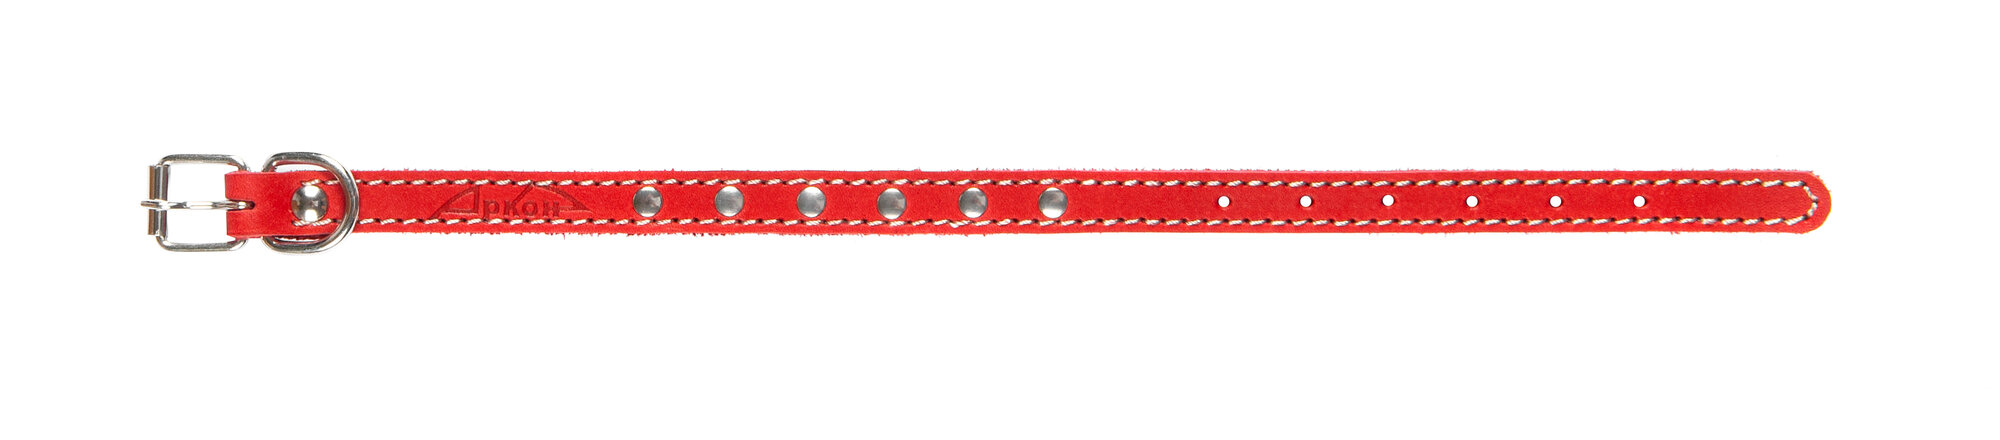 Ошейник аркон кожаный для собак однослойный, украшения, декоративная строчка, красный (21-29 см/14 мм)